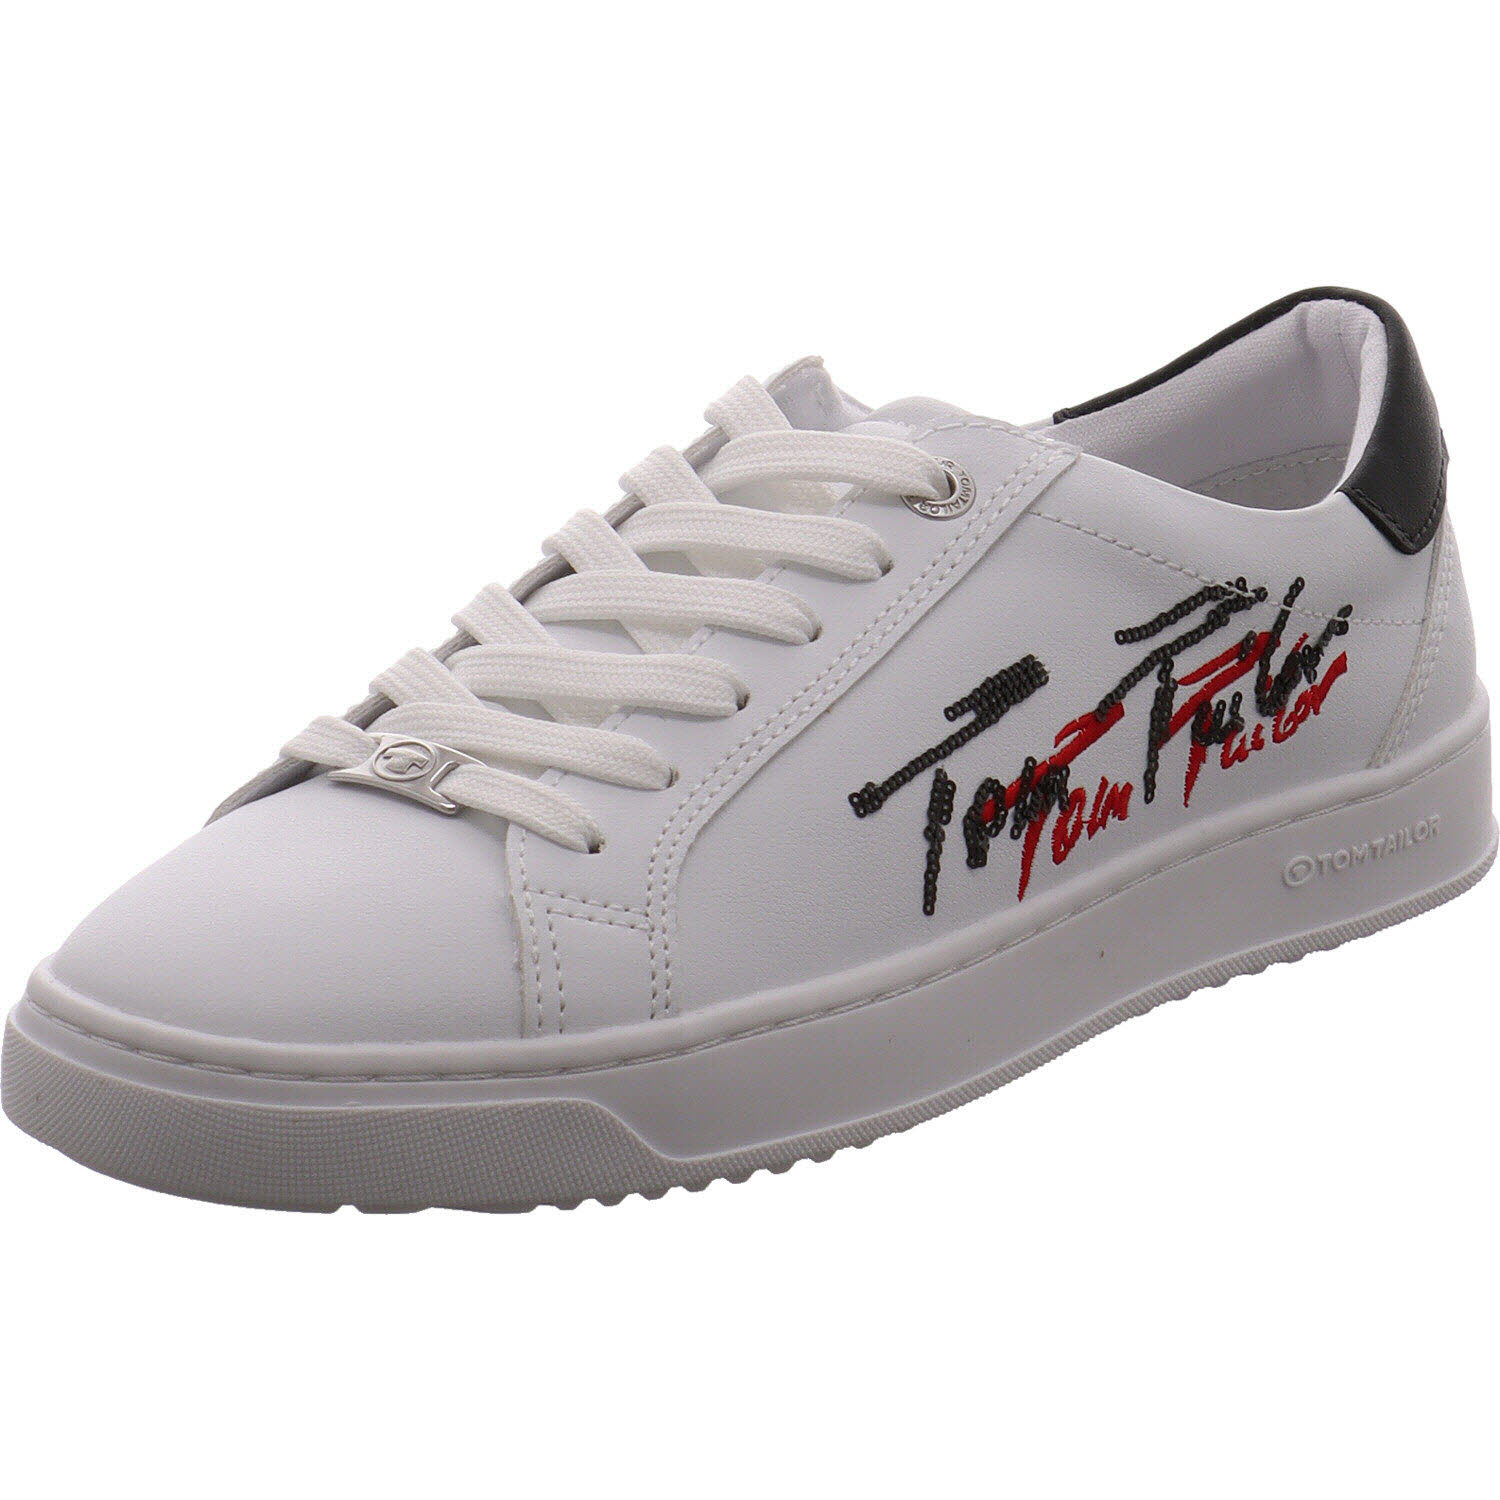 Tom Tailor Sneaker low Weiß für Damen